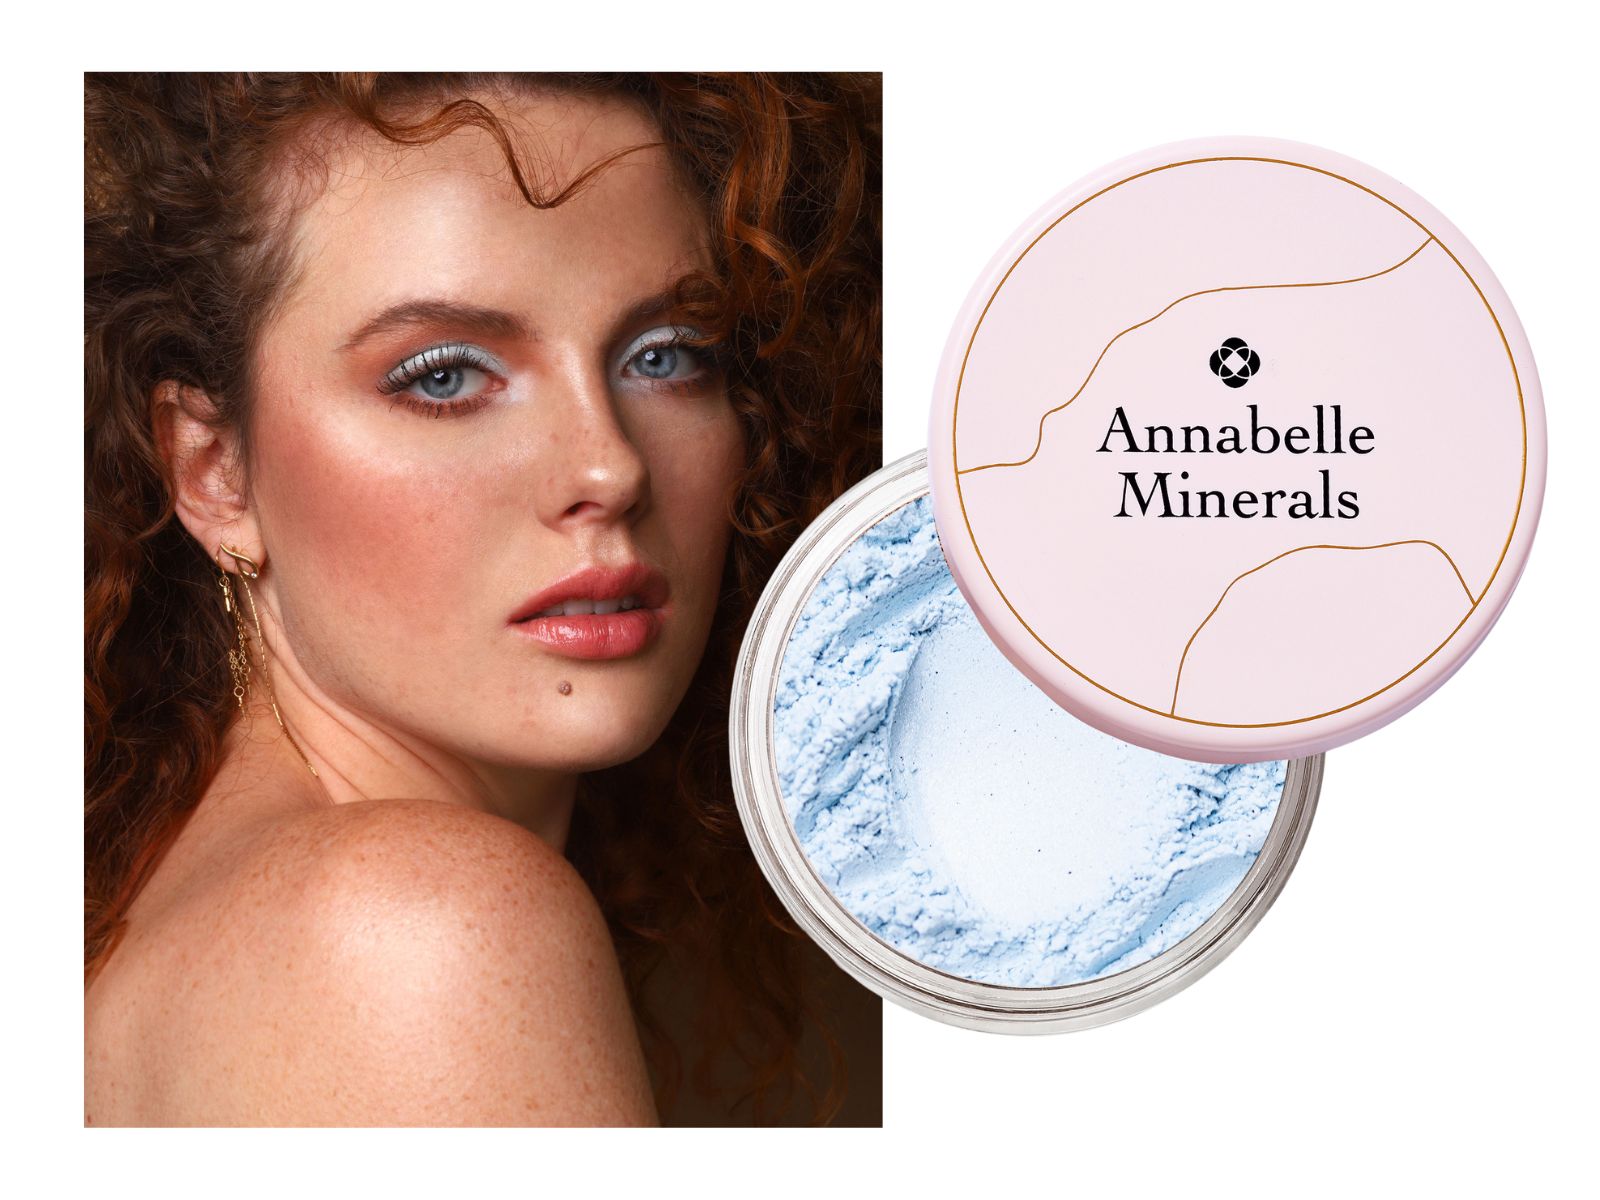 Jasno niebieski cień mineralny Water Ice Annabelle MInerals do niebieskiej tęczówki